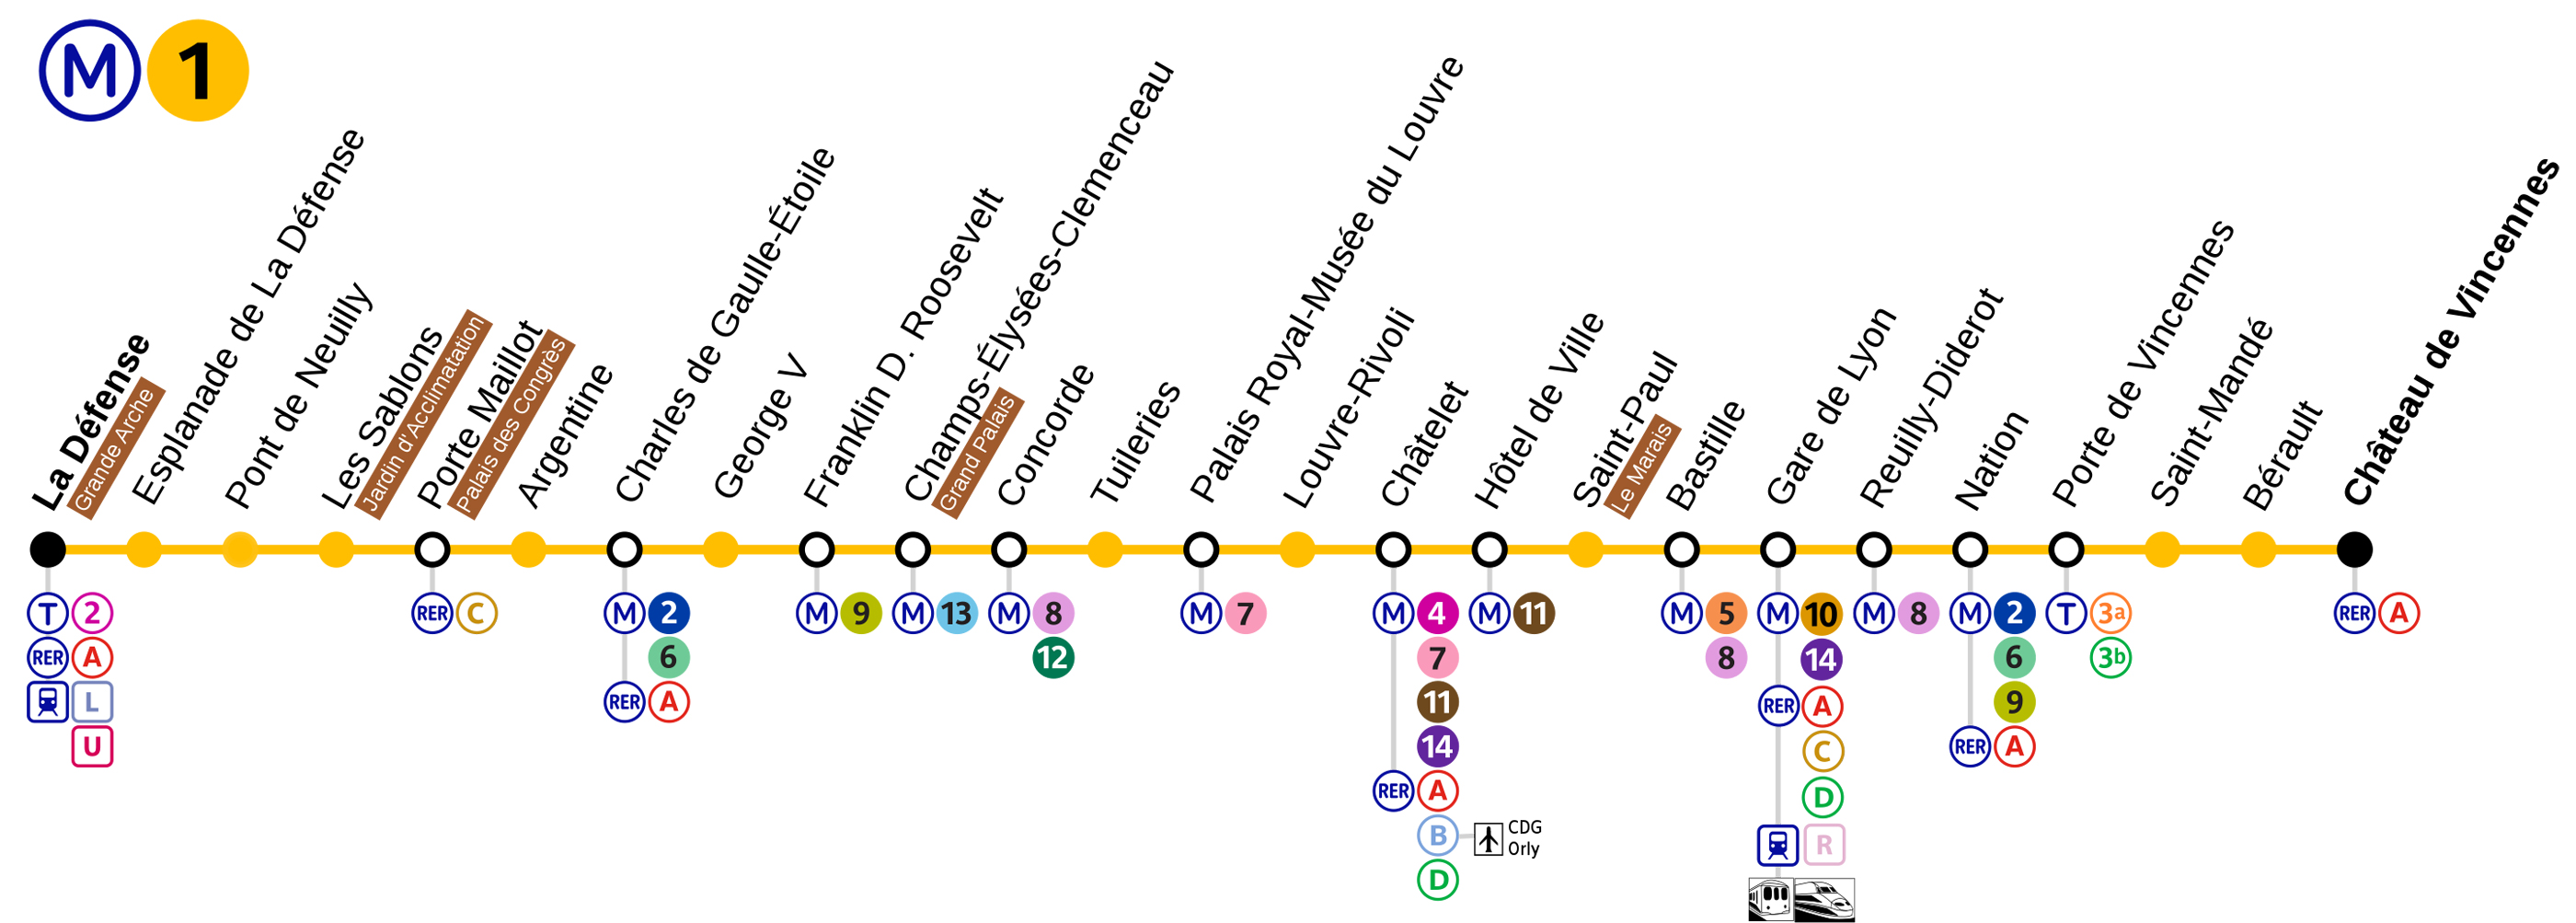 Plan du Métro Ligne 1 - Arrêt Chatelet